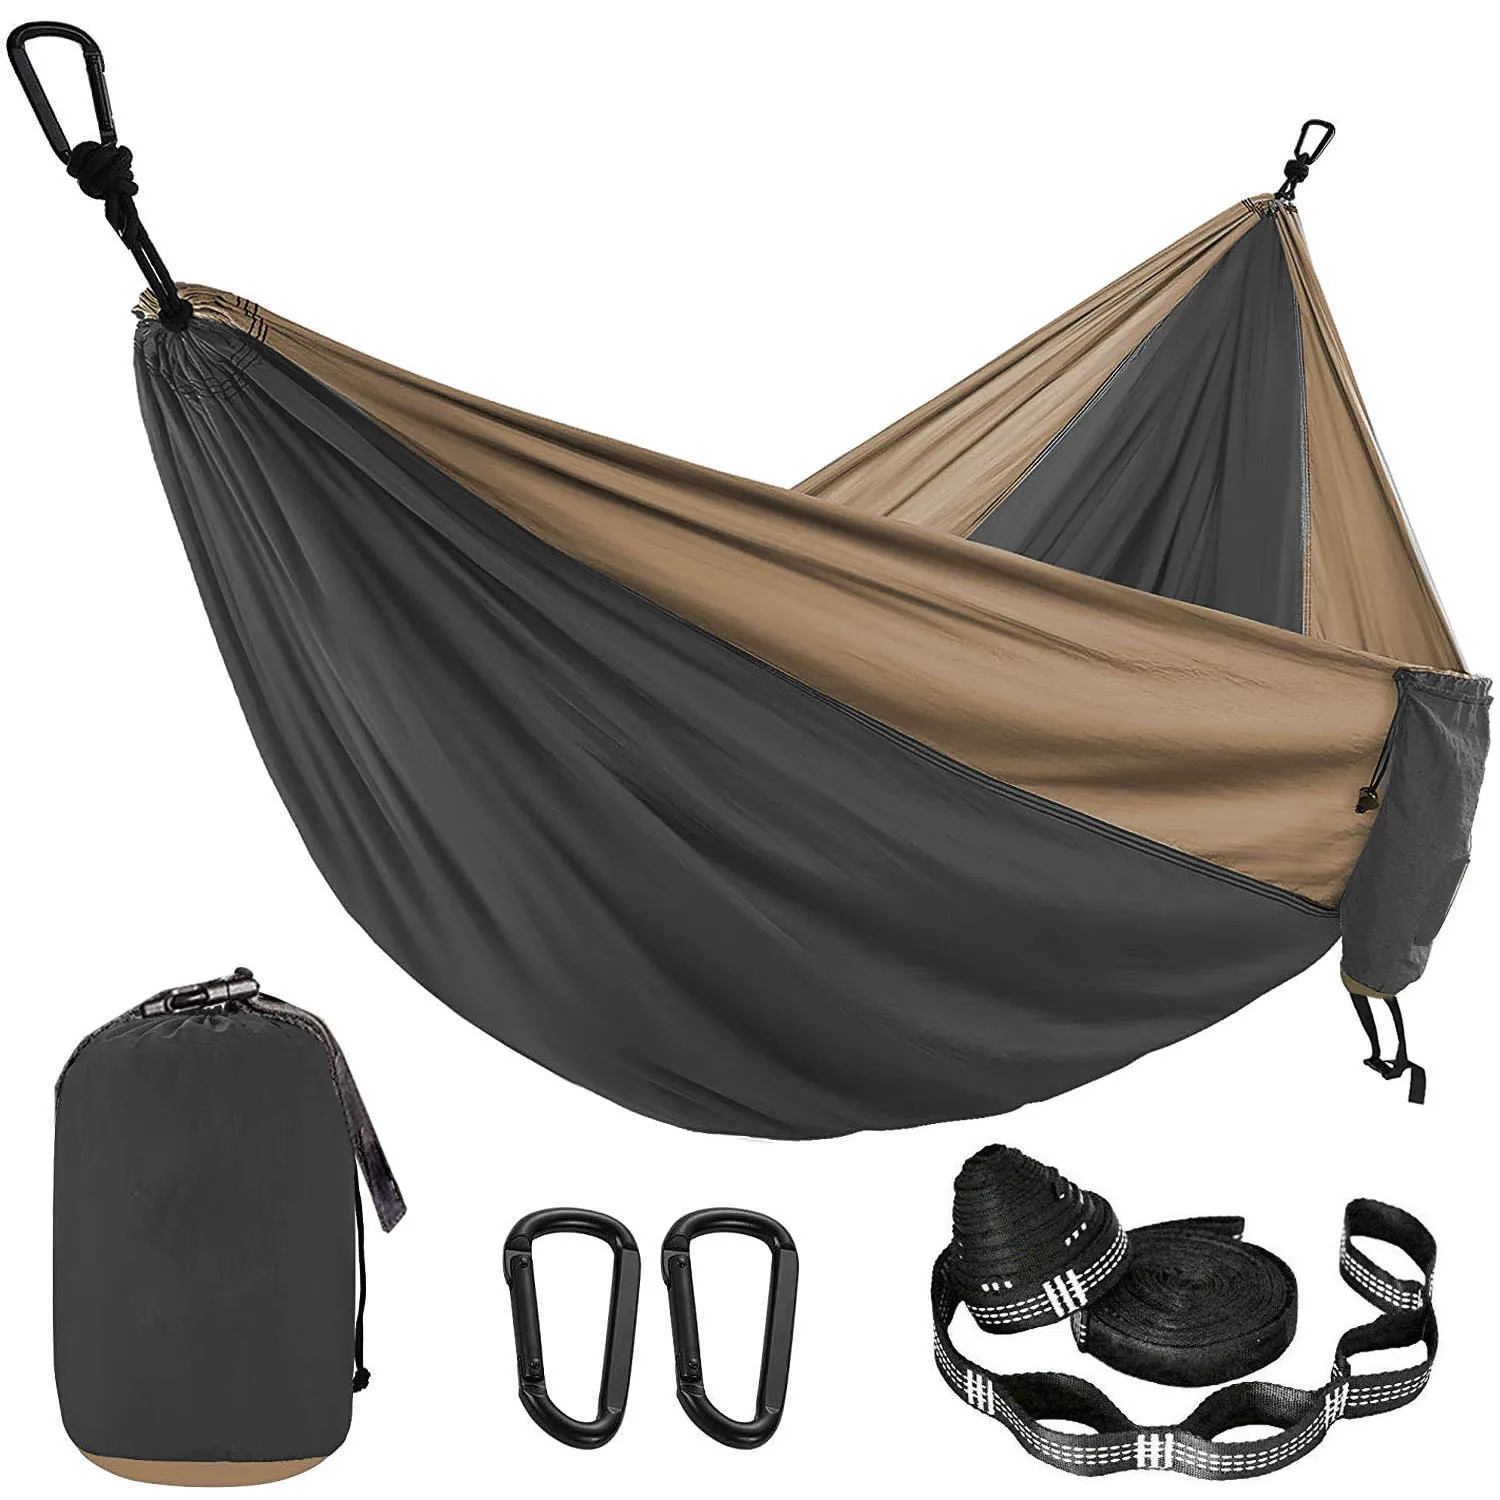 Hamac Parachute de couleur unie, avec sangles de hamac et mousqueton noir, mobilier d'extérieur pour Camping survie voyage pour deux personnes